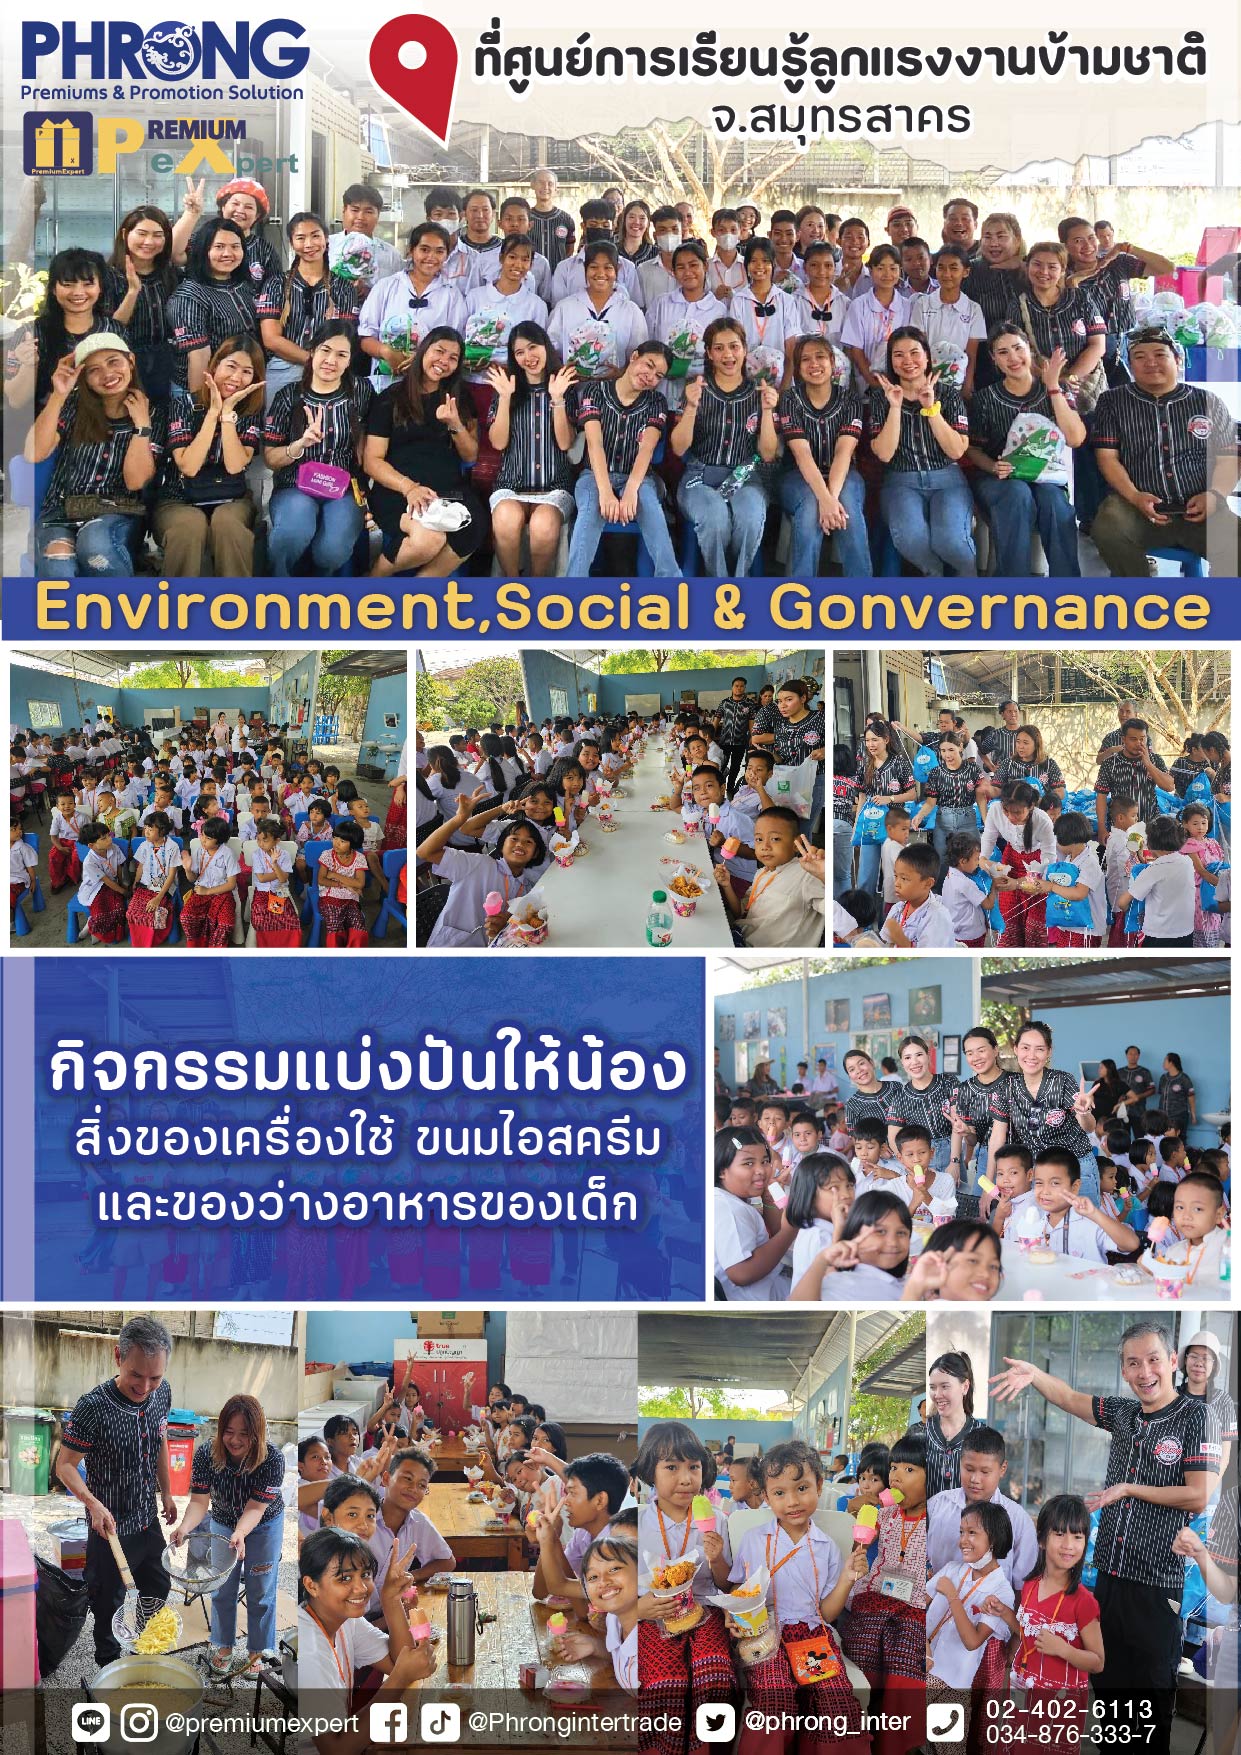 รูปภาพ ภาพบรรยากาศอบอุ่น โครงการแบ่งบันให้โอกาสแด่น้องๆ ที่ศูนย์การเรียนรู้ลูกแรงงานข้ามชาติ สมุทรสาคร มูลนิธิรักษ์ไทย 